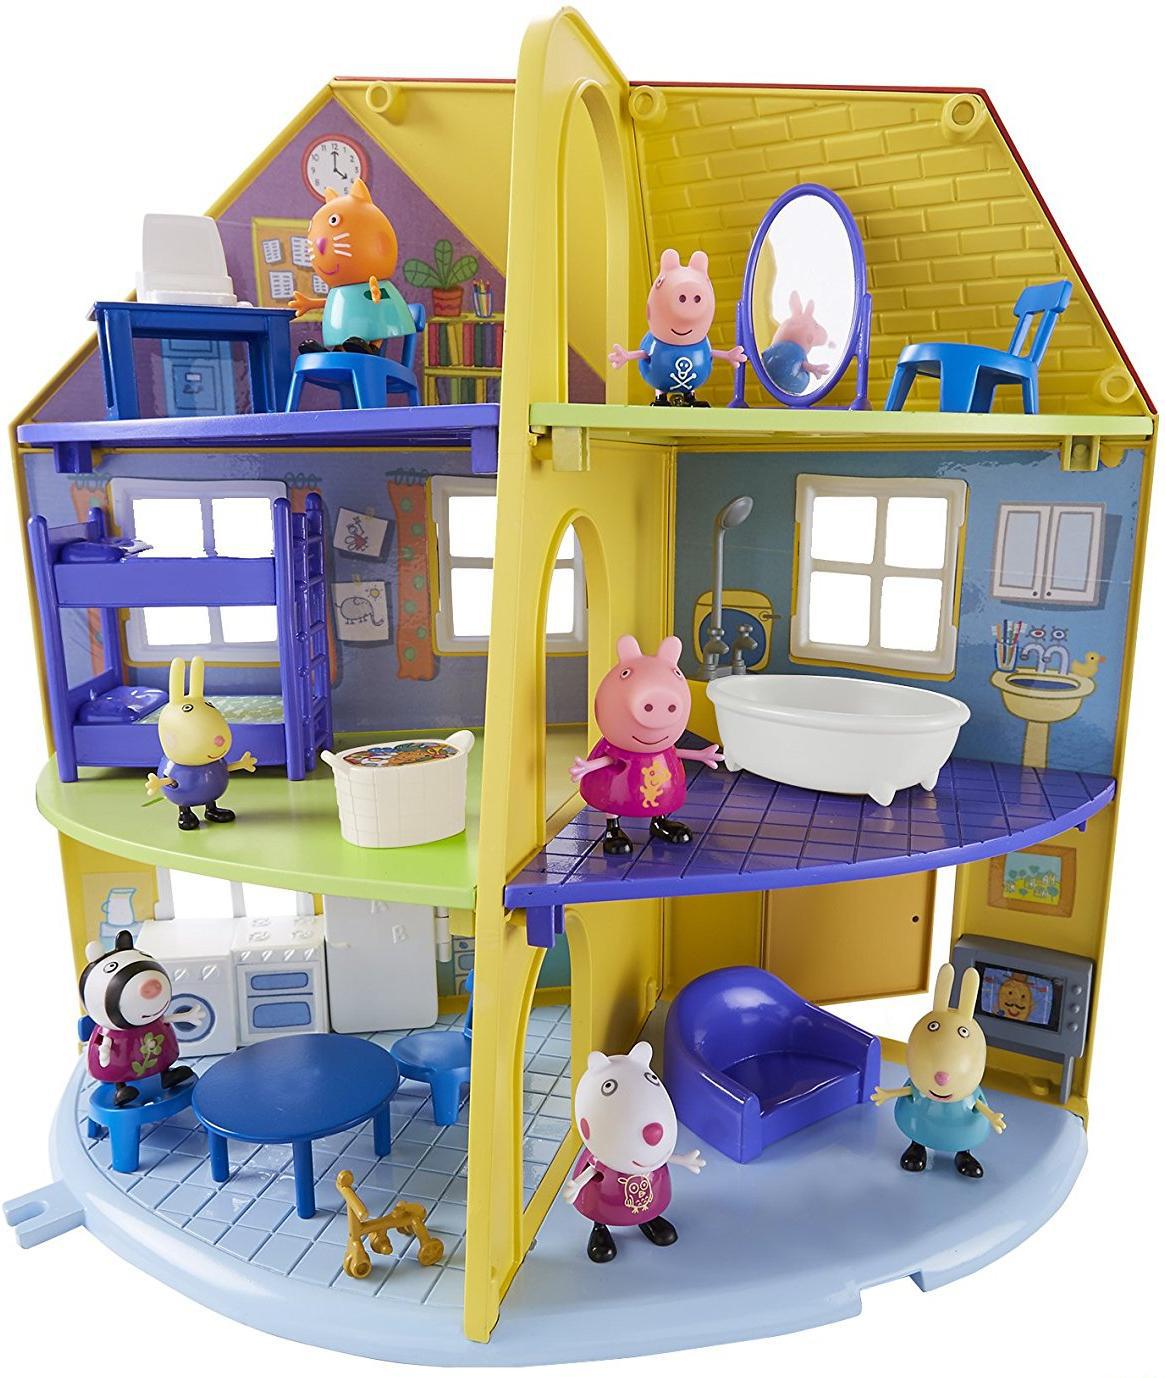 Nova Casa da Família Peppa Pig - New House Peppa Pig Family #peppapig 